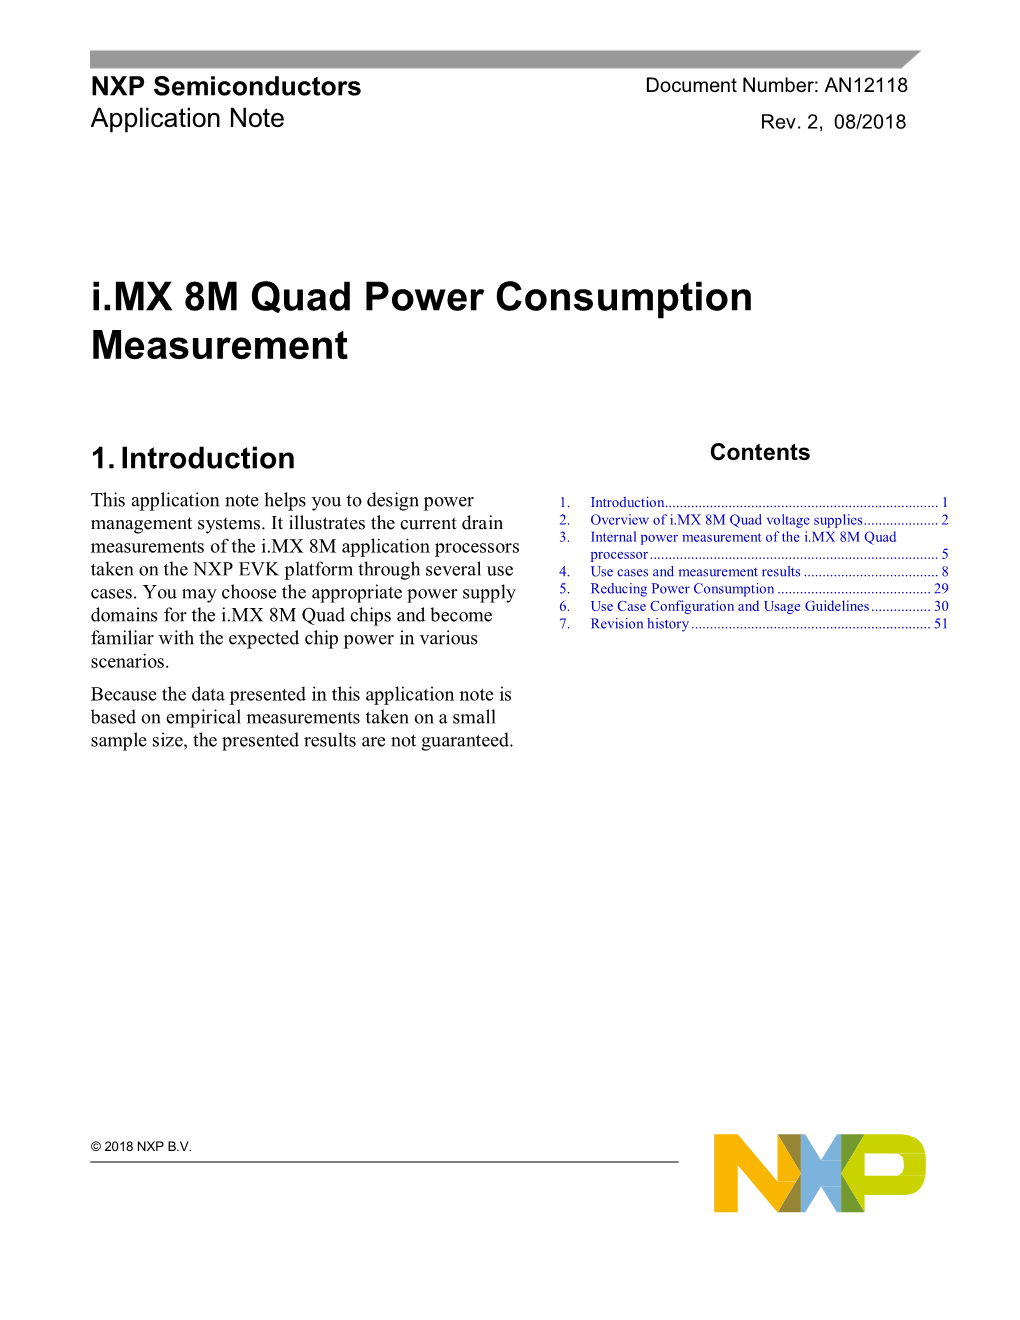 AN12118 I.MX 8M Quad Power Consumption Measurement